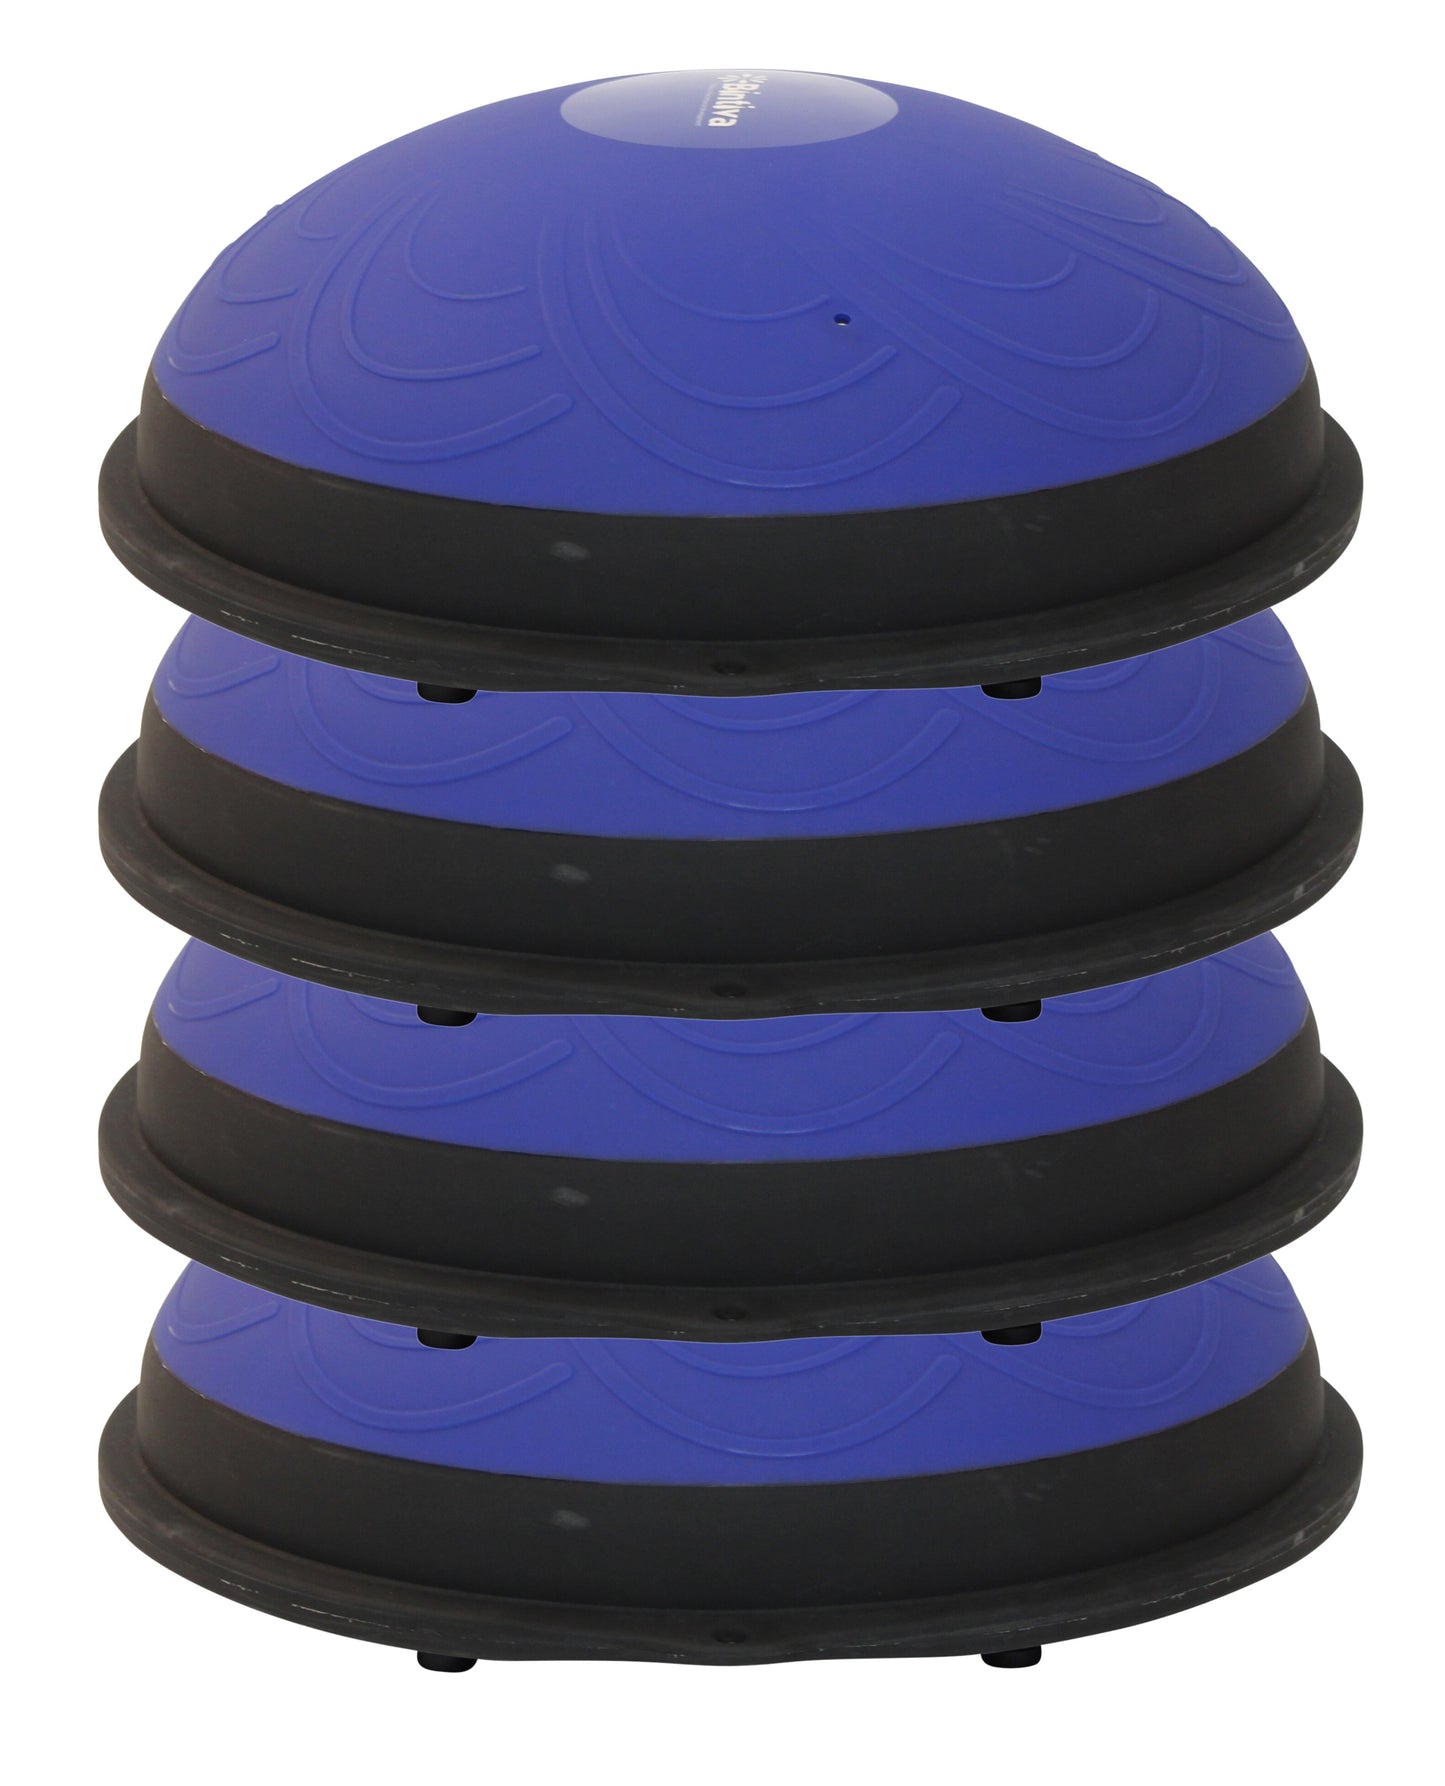 Bintiva Active Floor Seat - Blue - 4 Pack